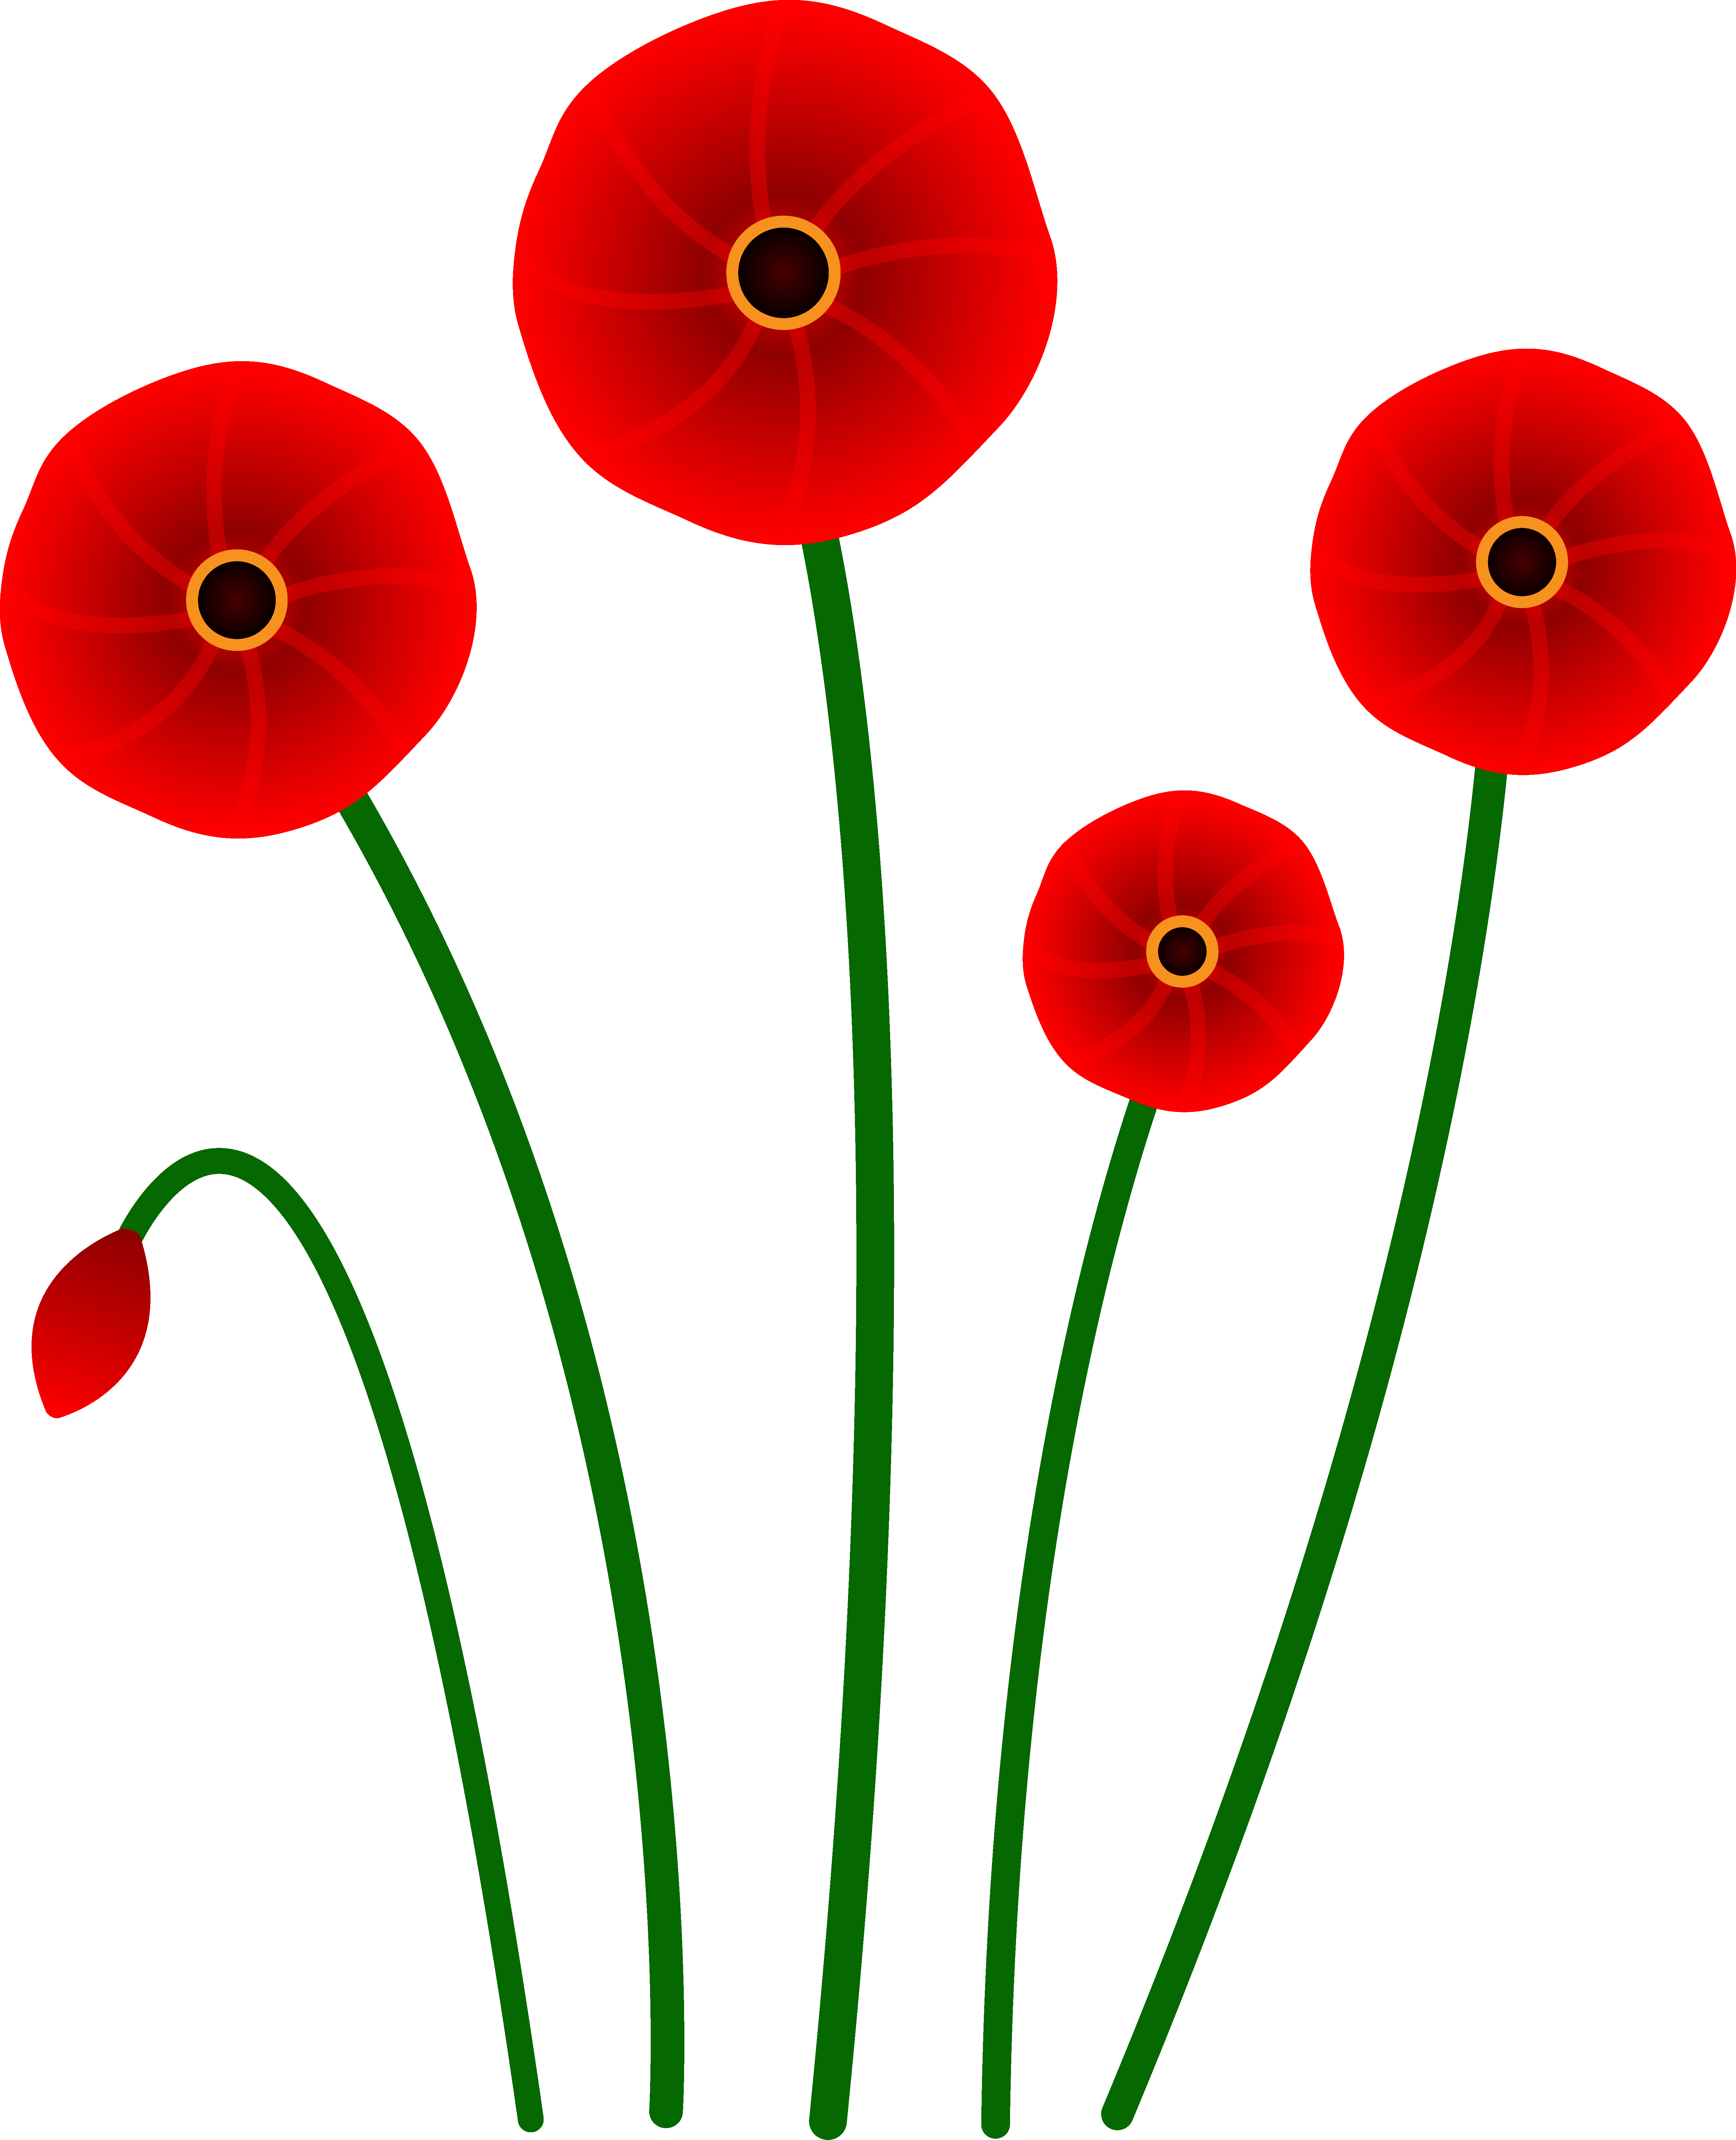 Poppy flower clipart